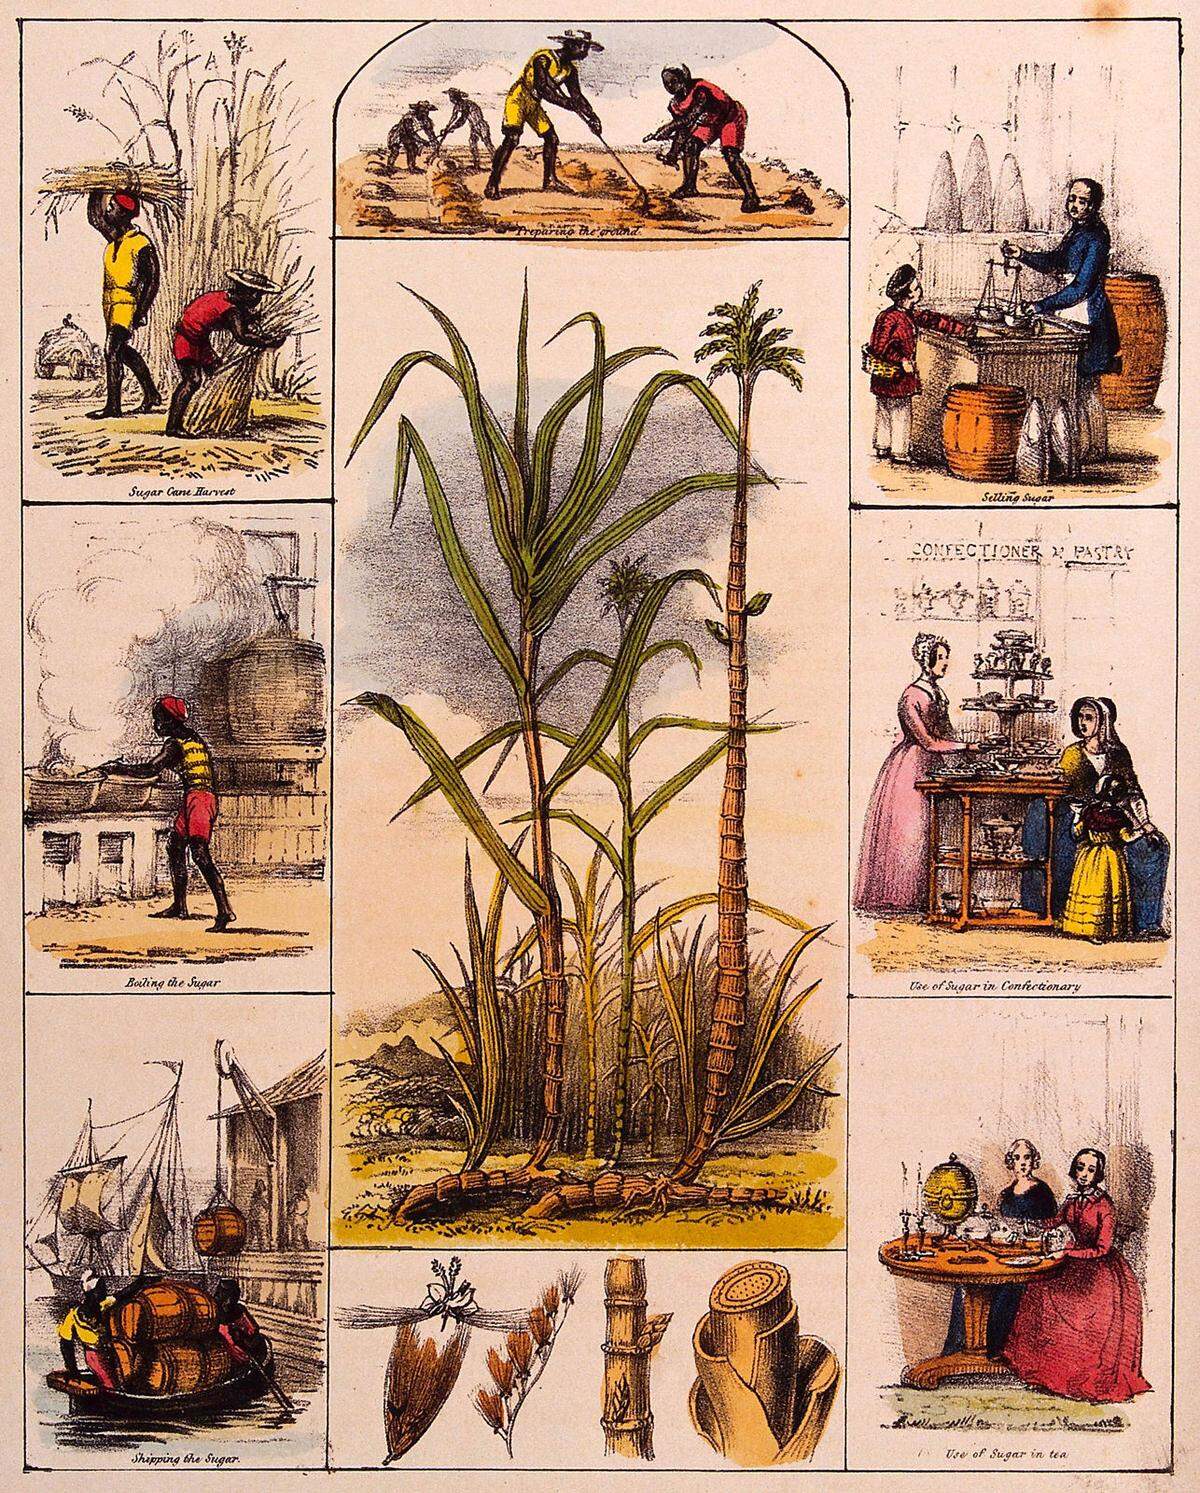 Der Zuckerboykott gegen die Sklaverei beginnt in der zweiten Hälfte des 18. Jahrhunderts in einigen Ländern Europas. Zucker wird zum Symbol des geächteten, doch zugleich einträglichen Sklavenhandels. Cruikshank macht sich lustig über den Adel, der seinen Zuckerverzicht gleichsetzt mit dem Kampf gegen die Sklaverei - aber sich schwertut, auch nur auf das Süßen des geliebten Tees zu verzichten.